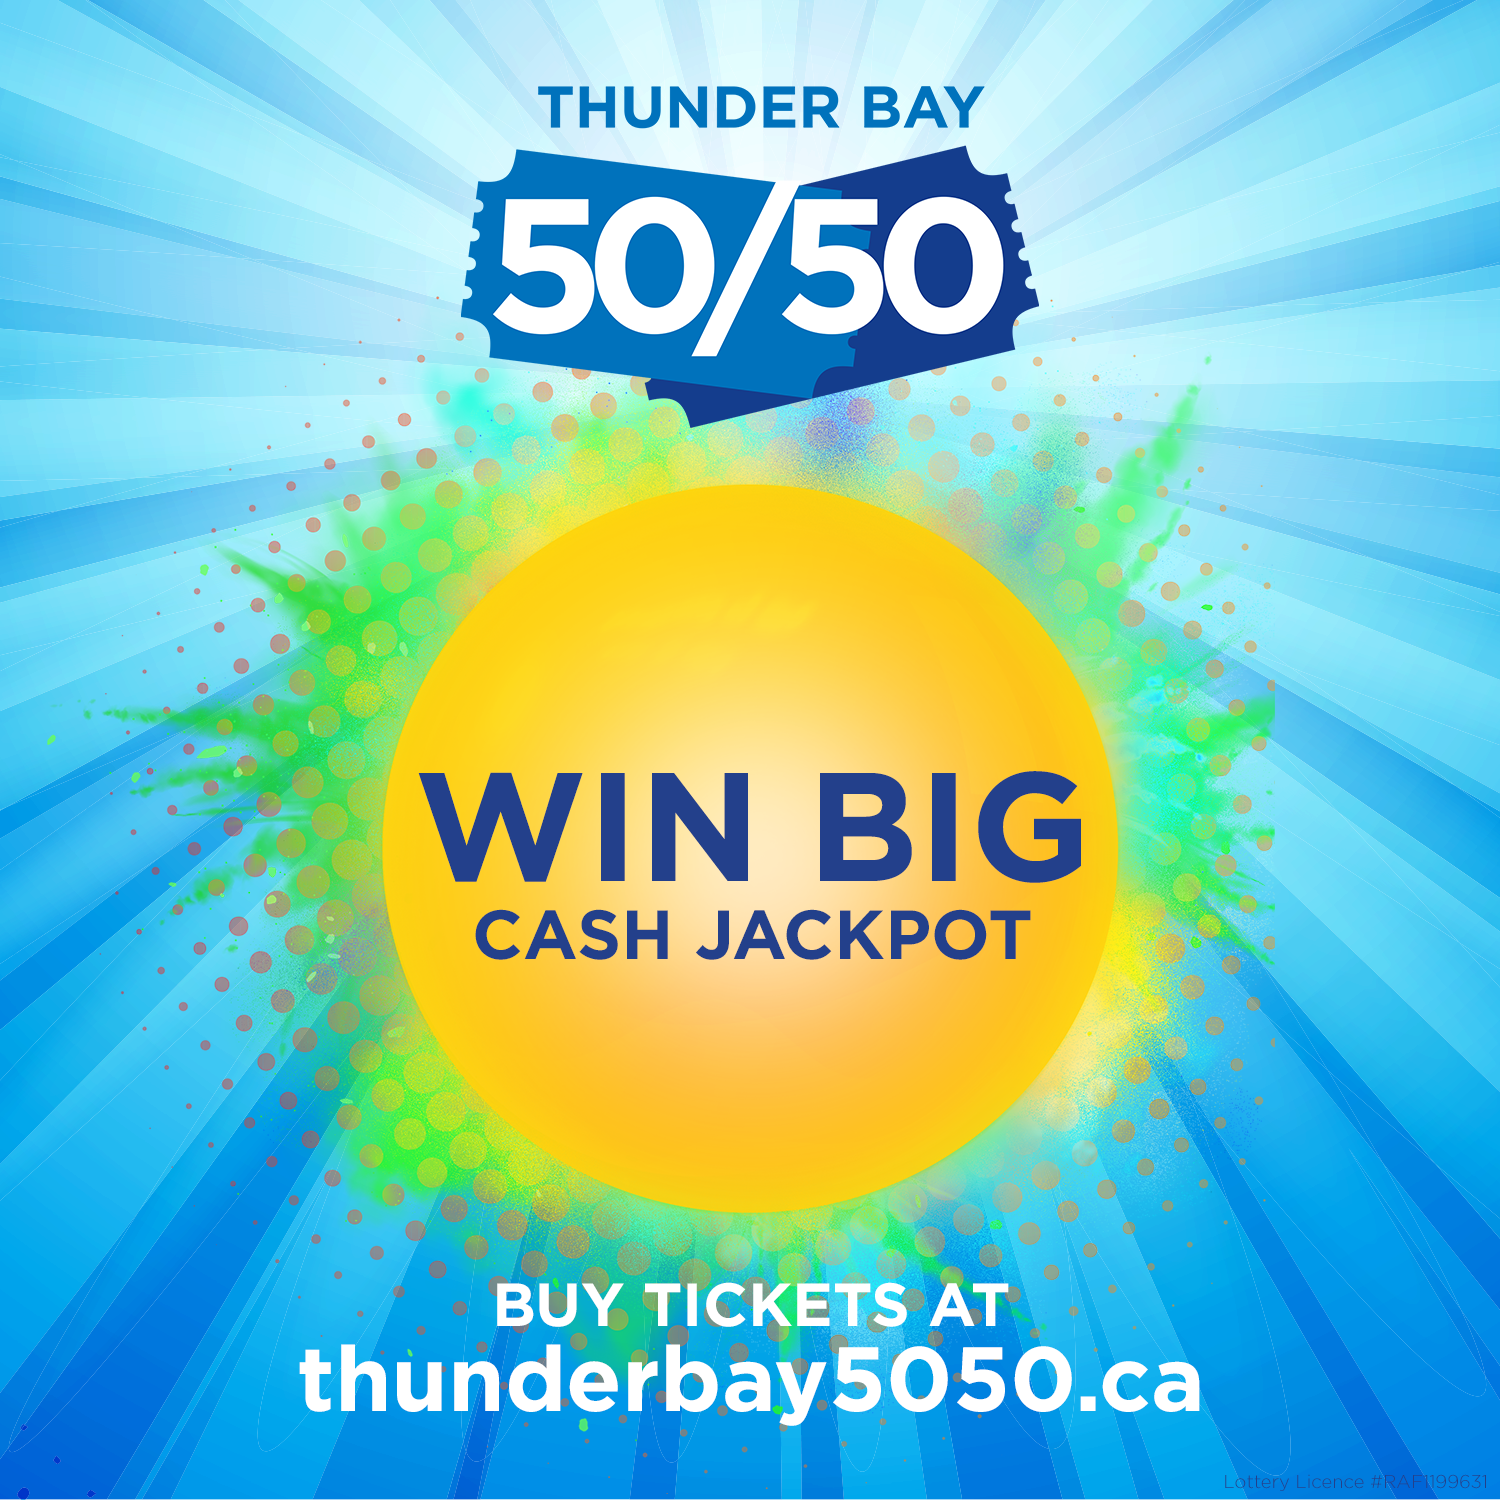 Thunder Bay 50/50 FAQs